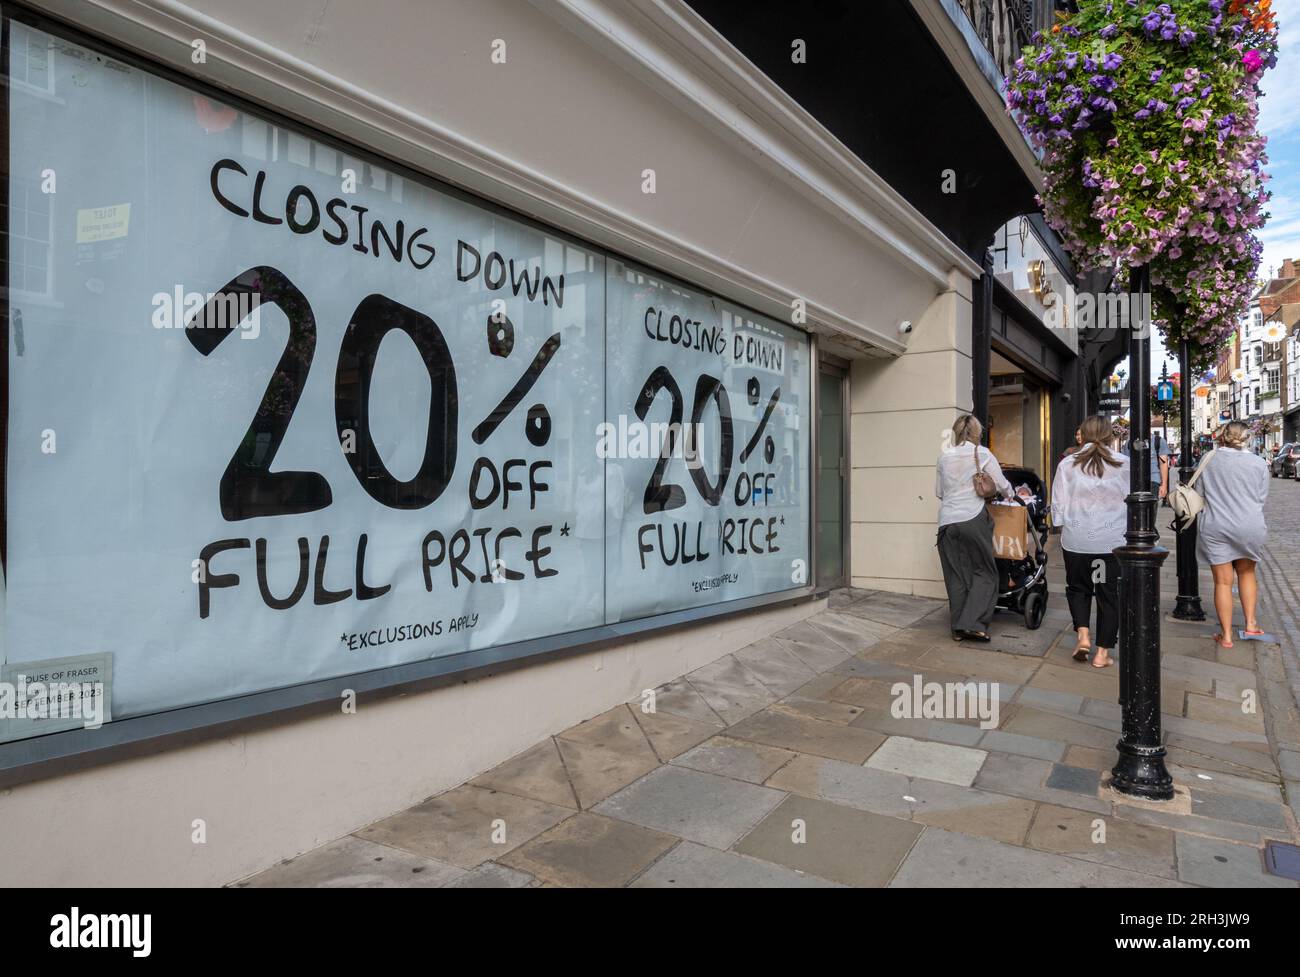 Le grand magasin House of Fraser à Guildford, Surrey, Angleterre, Royaume-Uni, ferme ses portes le 30 septembre 2023. Photographié le 13 août 2023, de grandes affiches dans les vitrines du magasin haut de gamme annoncent une réduction de 20% sur la vente de fermeture. Banque D'Images